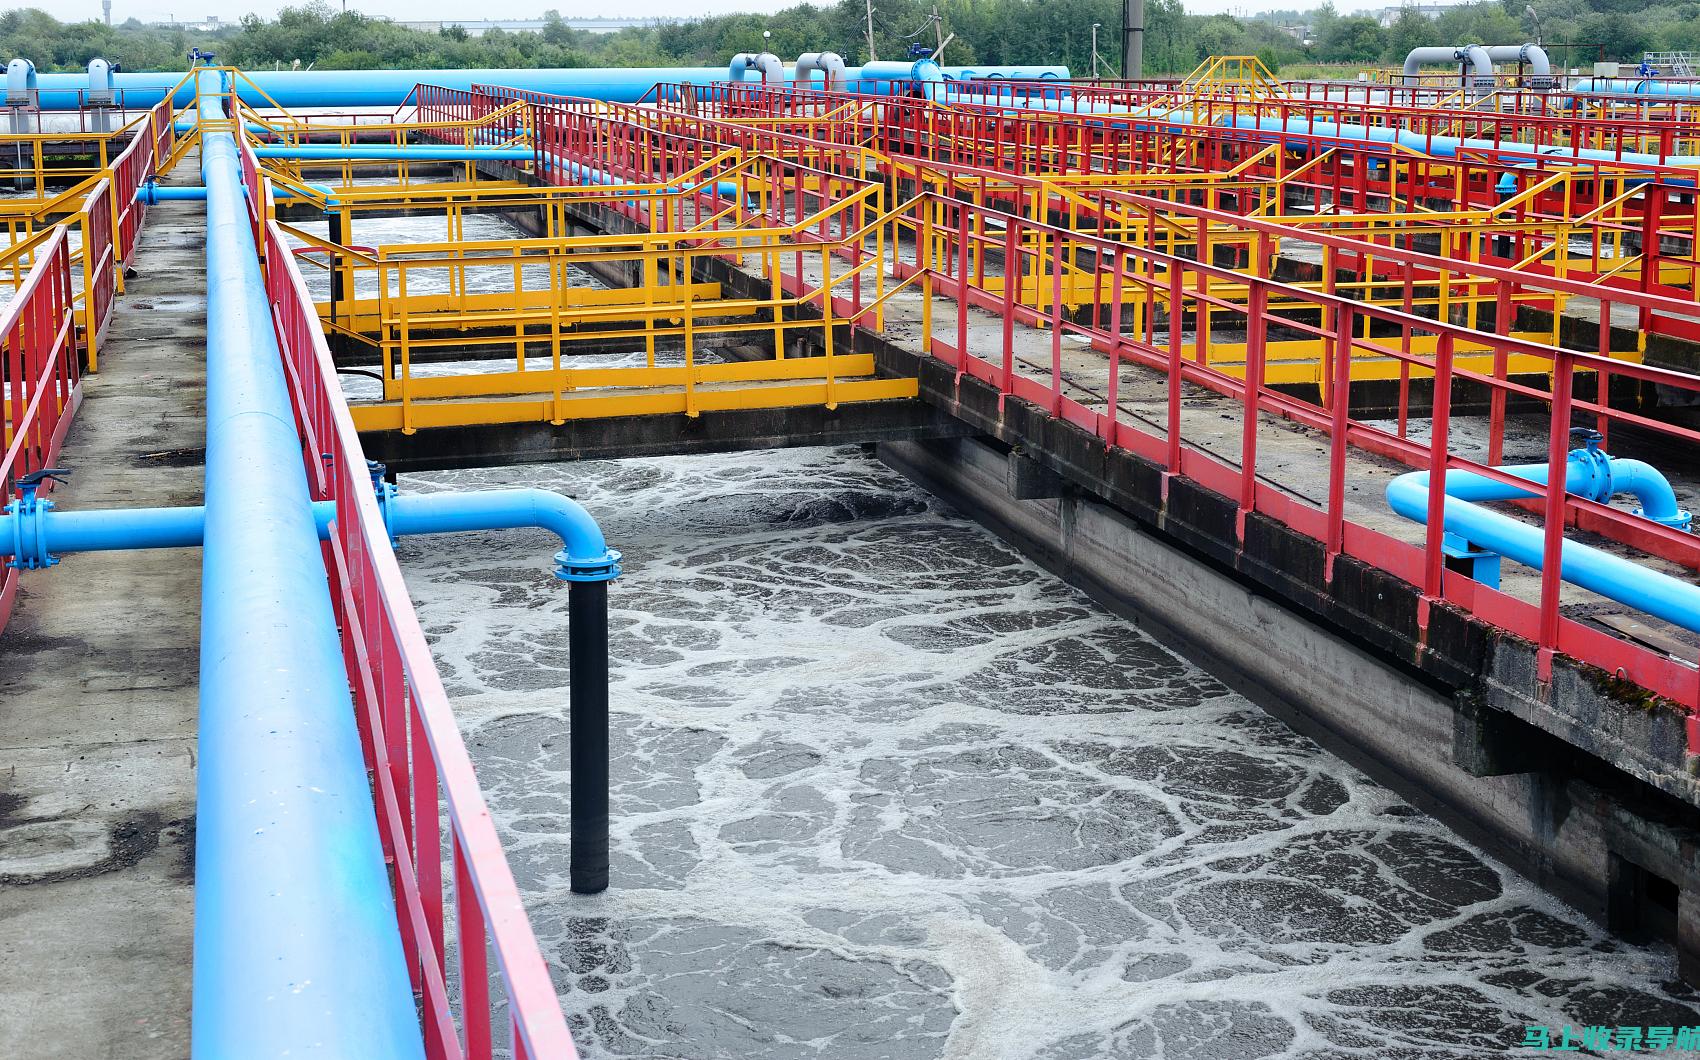 工业水处理系统：满足工业生产用水的高要求。